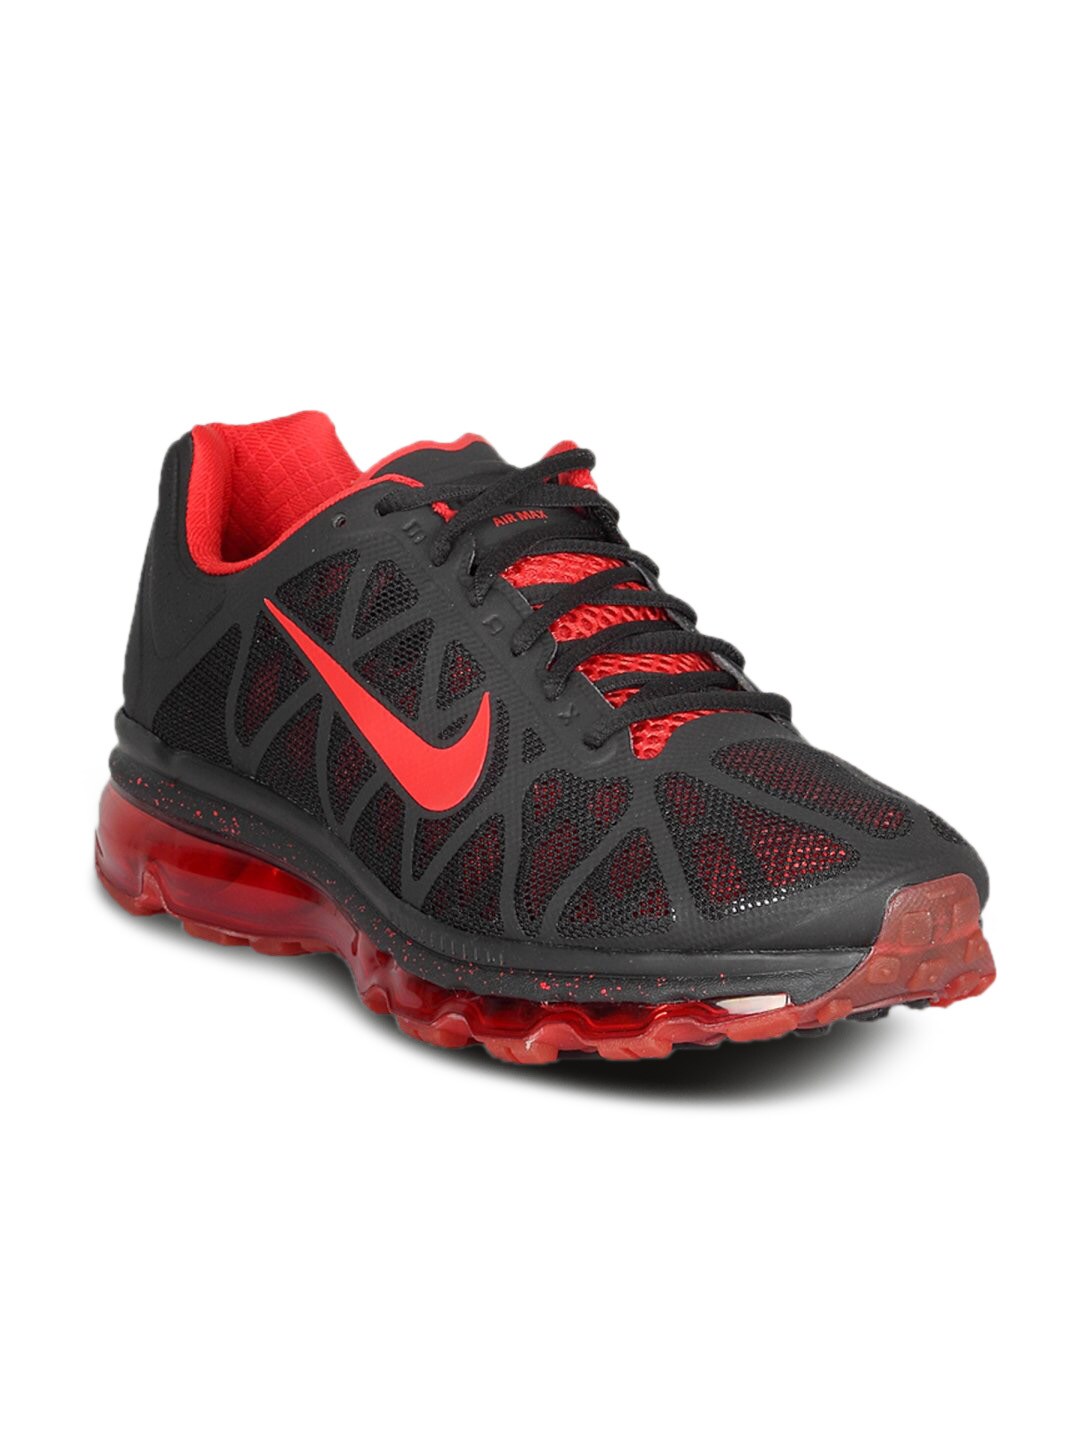 Nike Men's Air Max Black Red Shoe